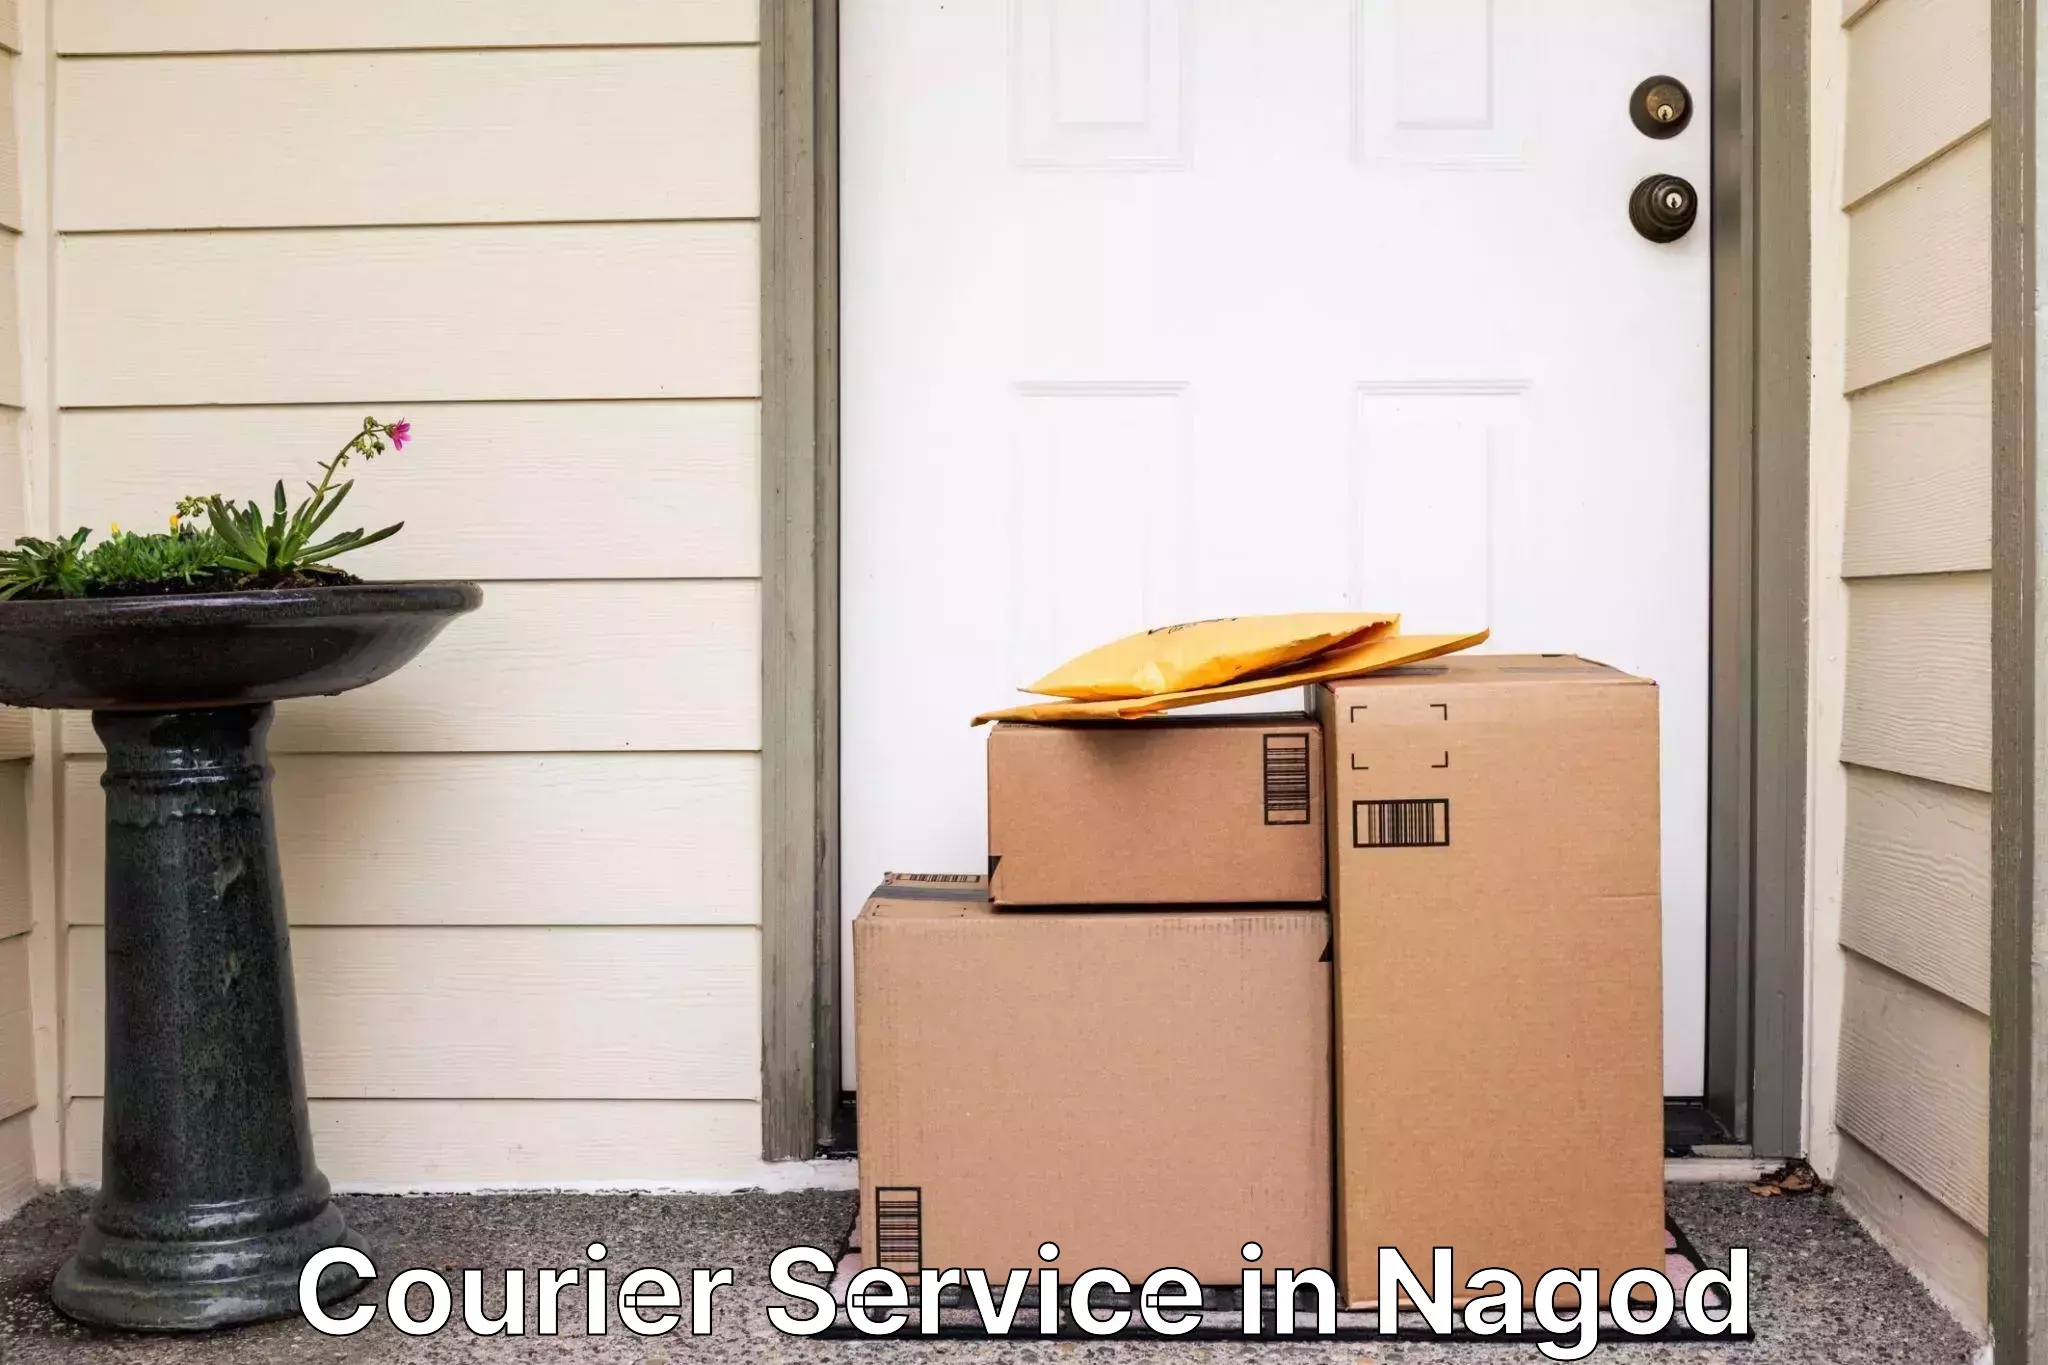 Efficient parcel transport in Nagod